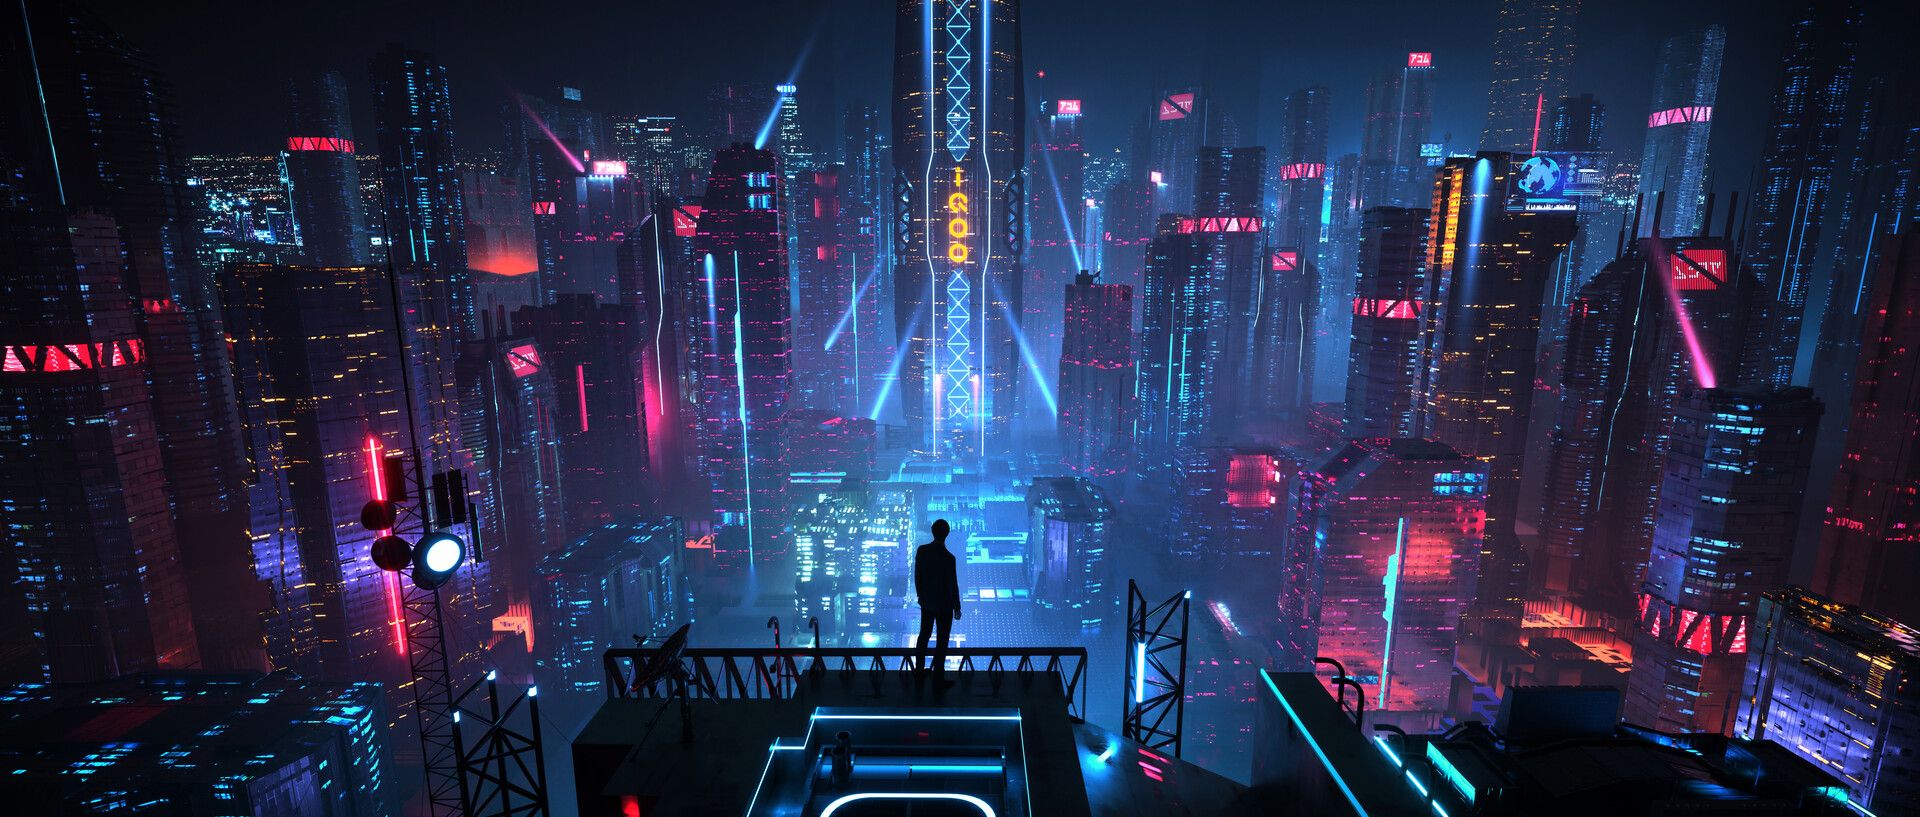 Cyberpunk City Desktop Wallpaper